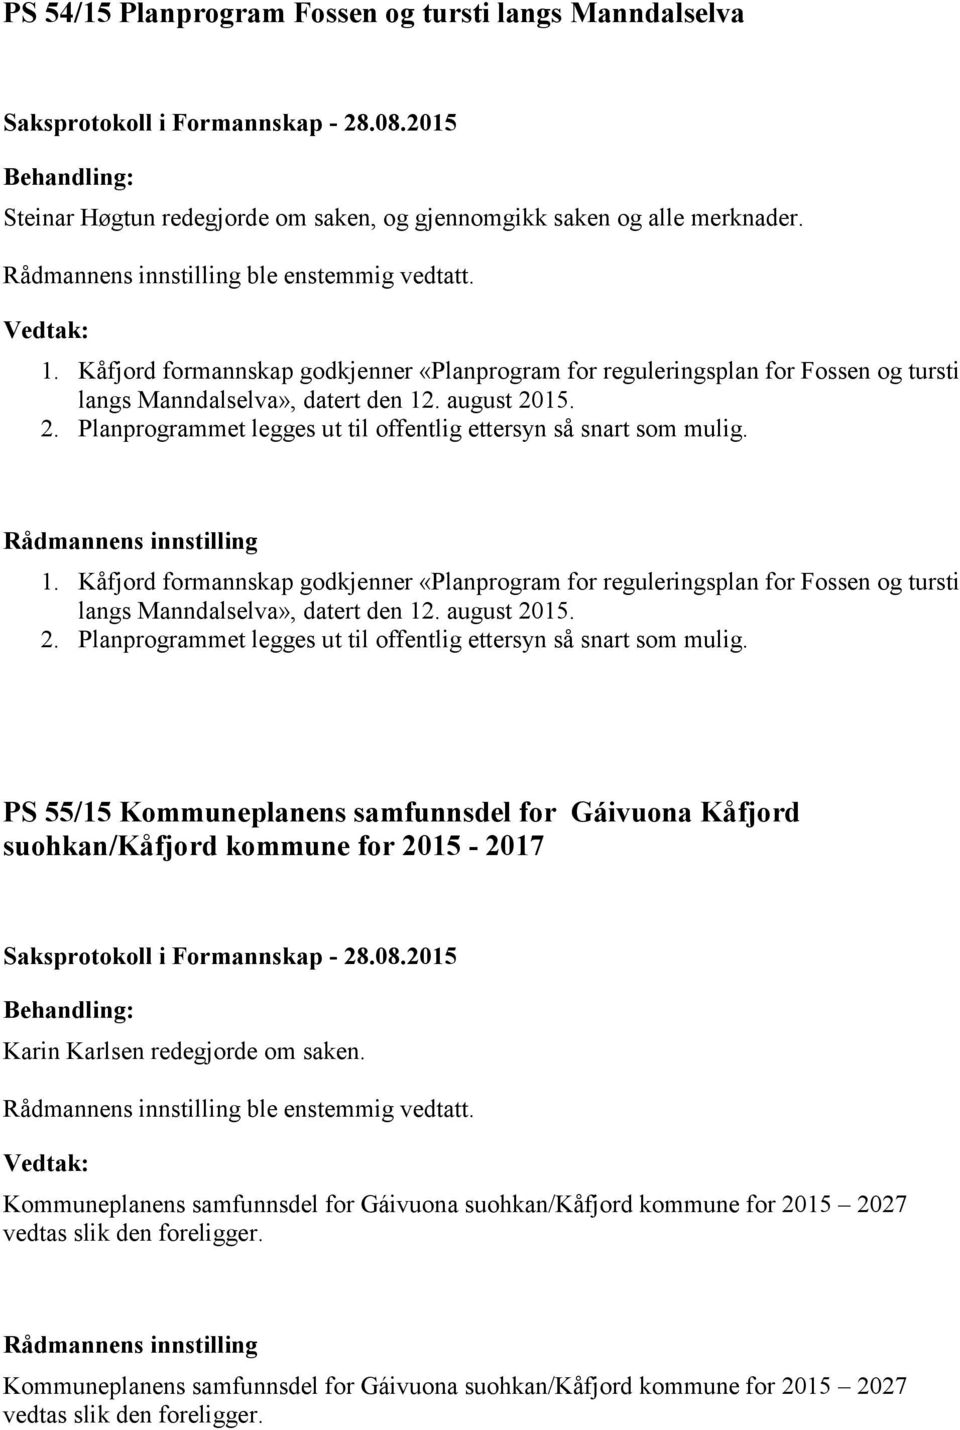 1.  PS 55/15 Kommuneplanens samfunnsdel for Gáivuona Kåfjord suohkan/kåfjord kommune for 2015-2017 Karin Karlsen redegjorde om saken. ble enstemmig vedtatt.